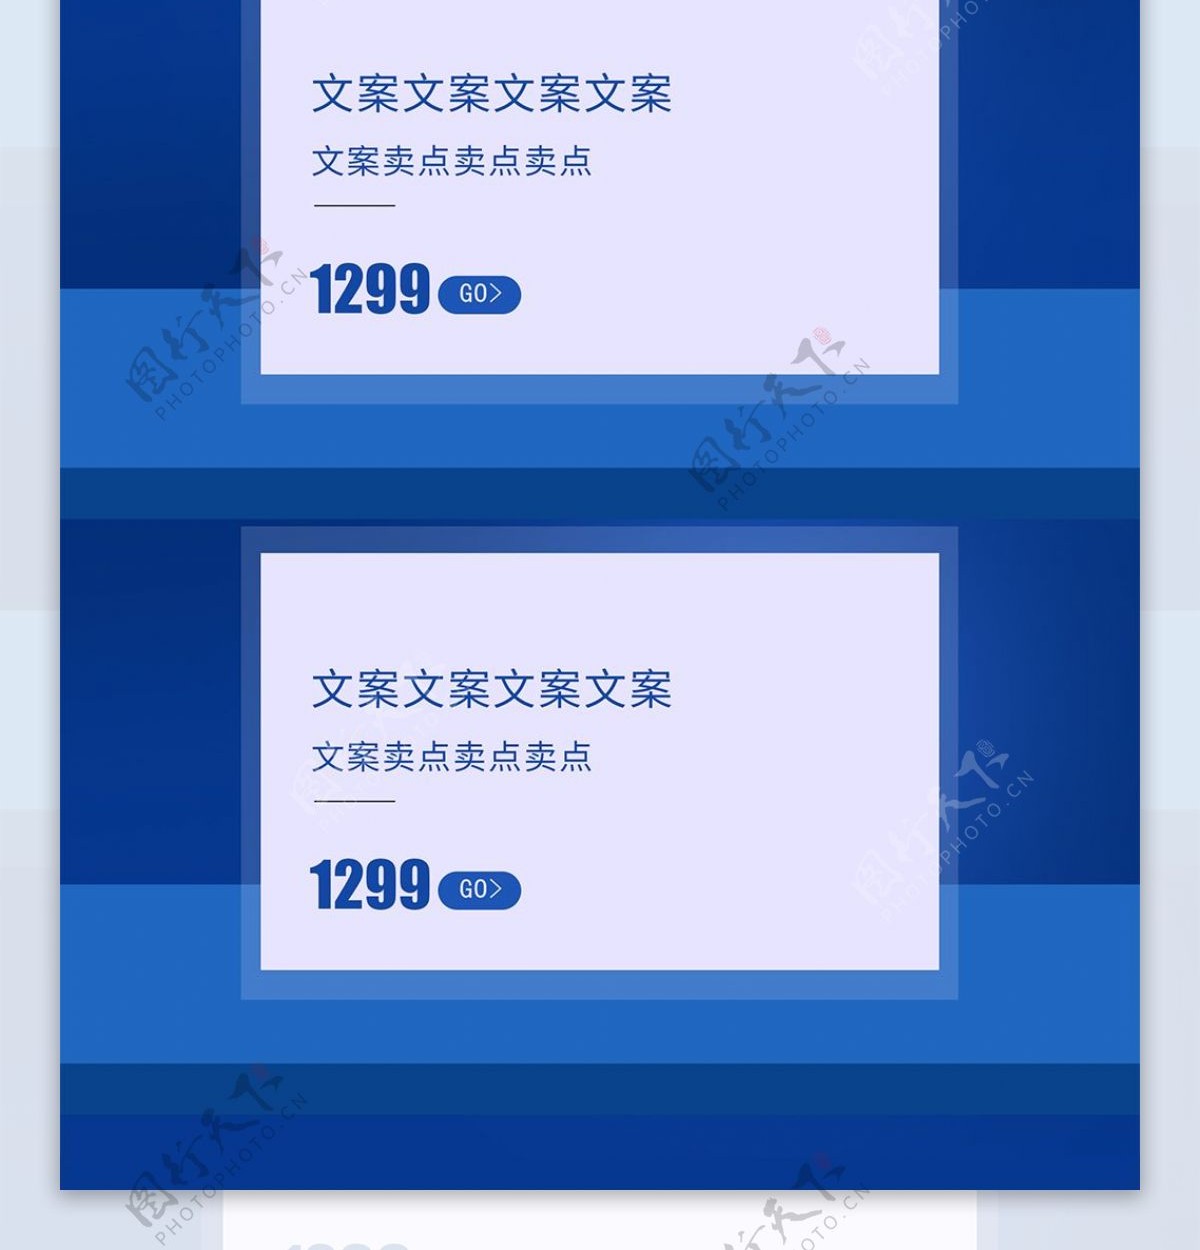 C4D炫酷蓝色油漆涂装节首页装修模板